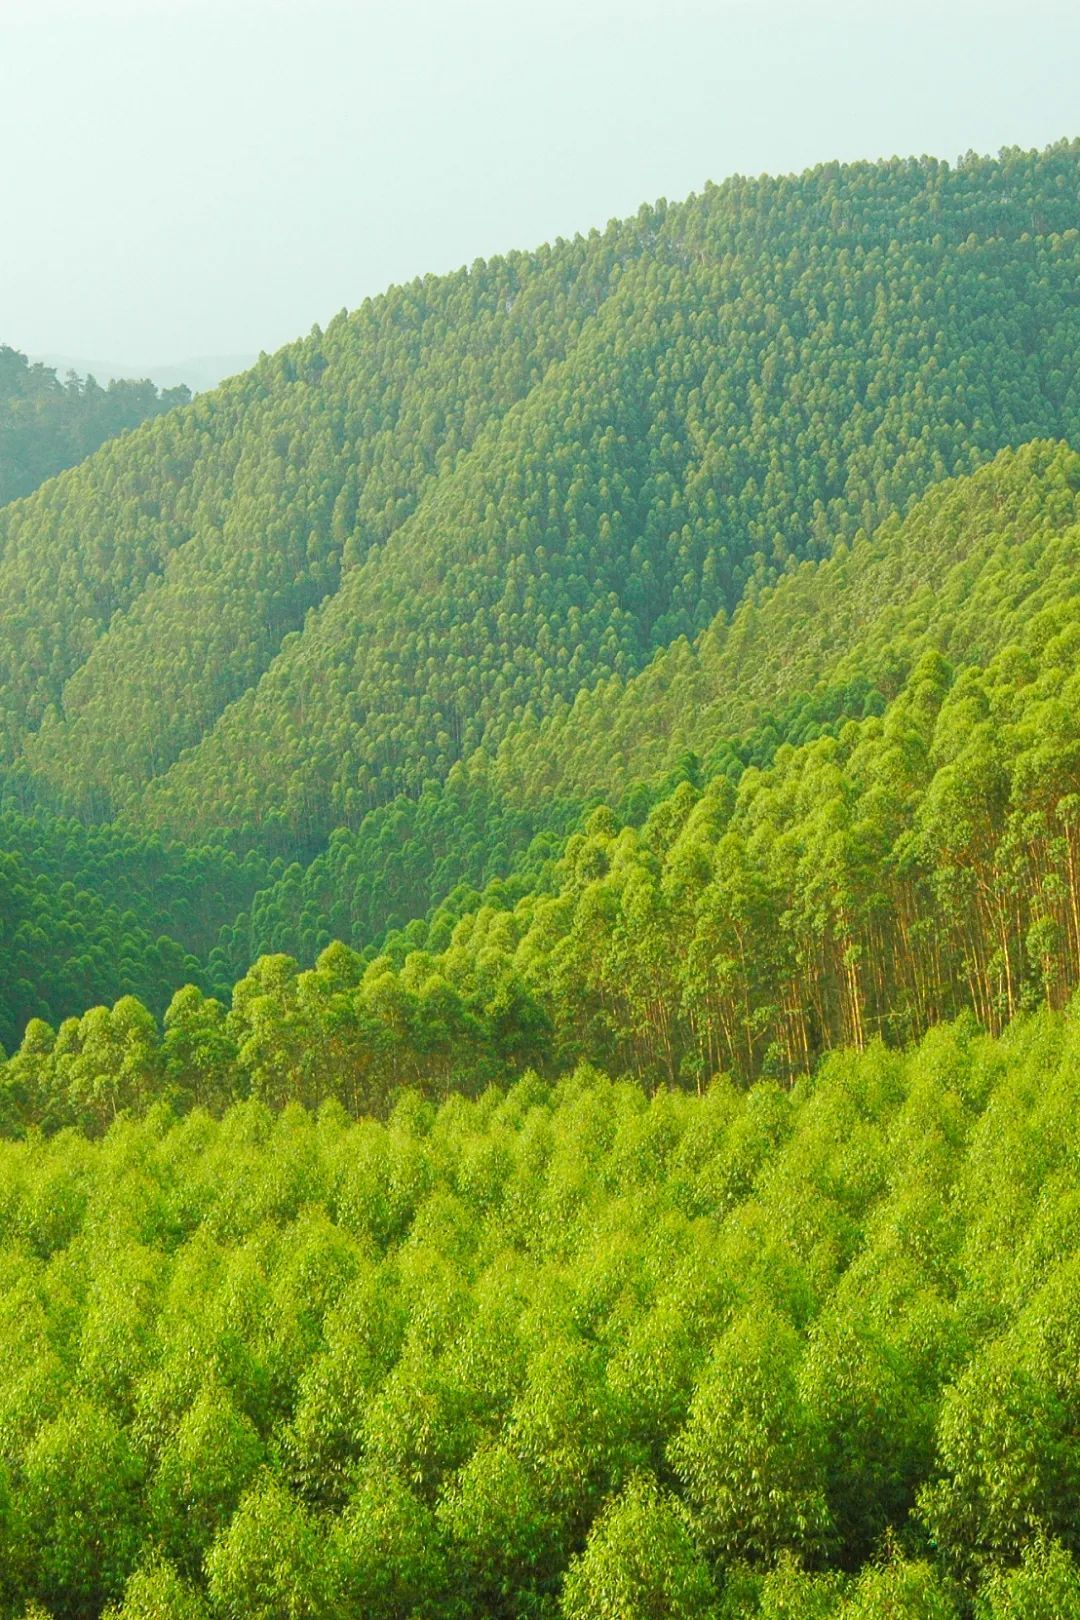 植树造林，如何改变中国？